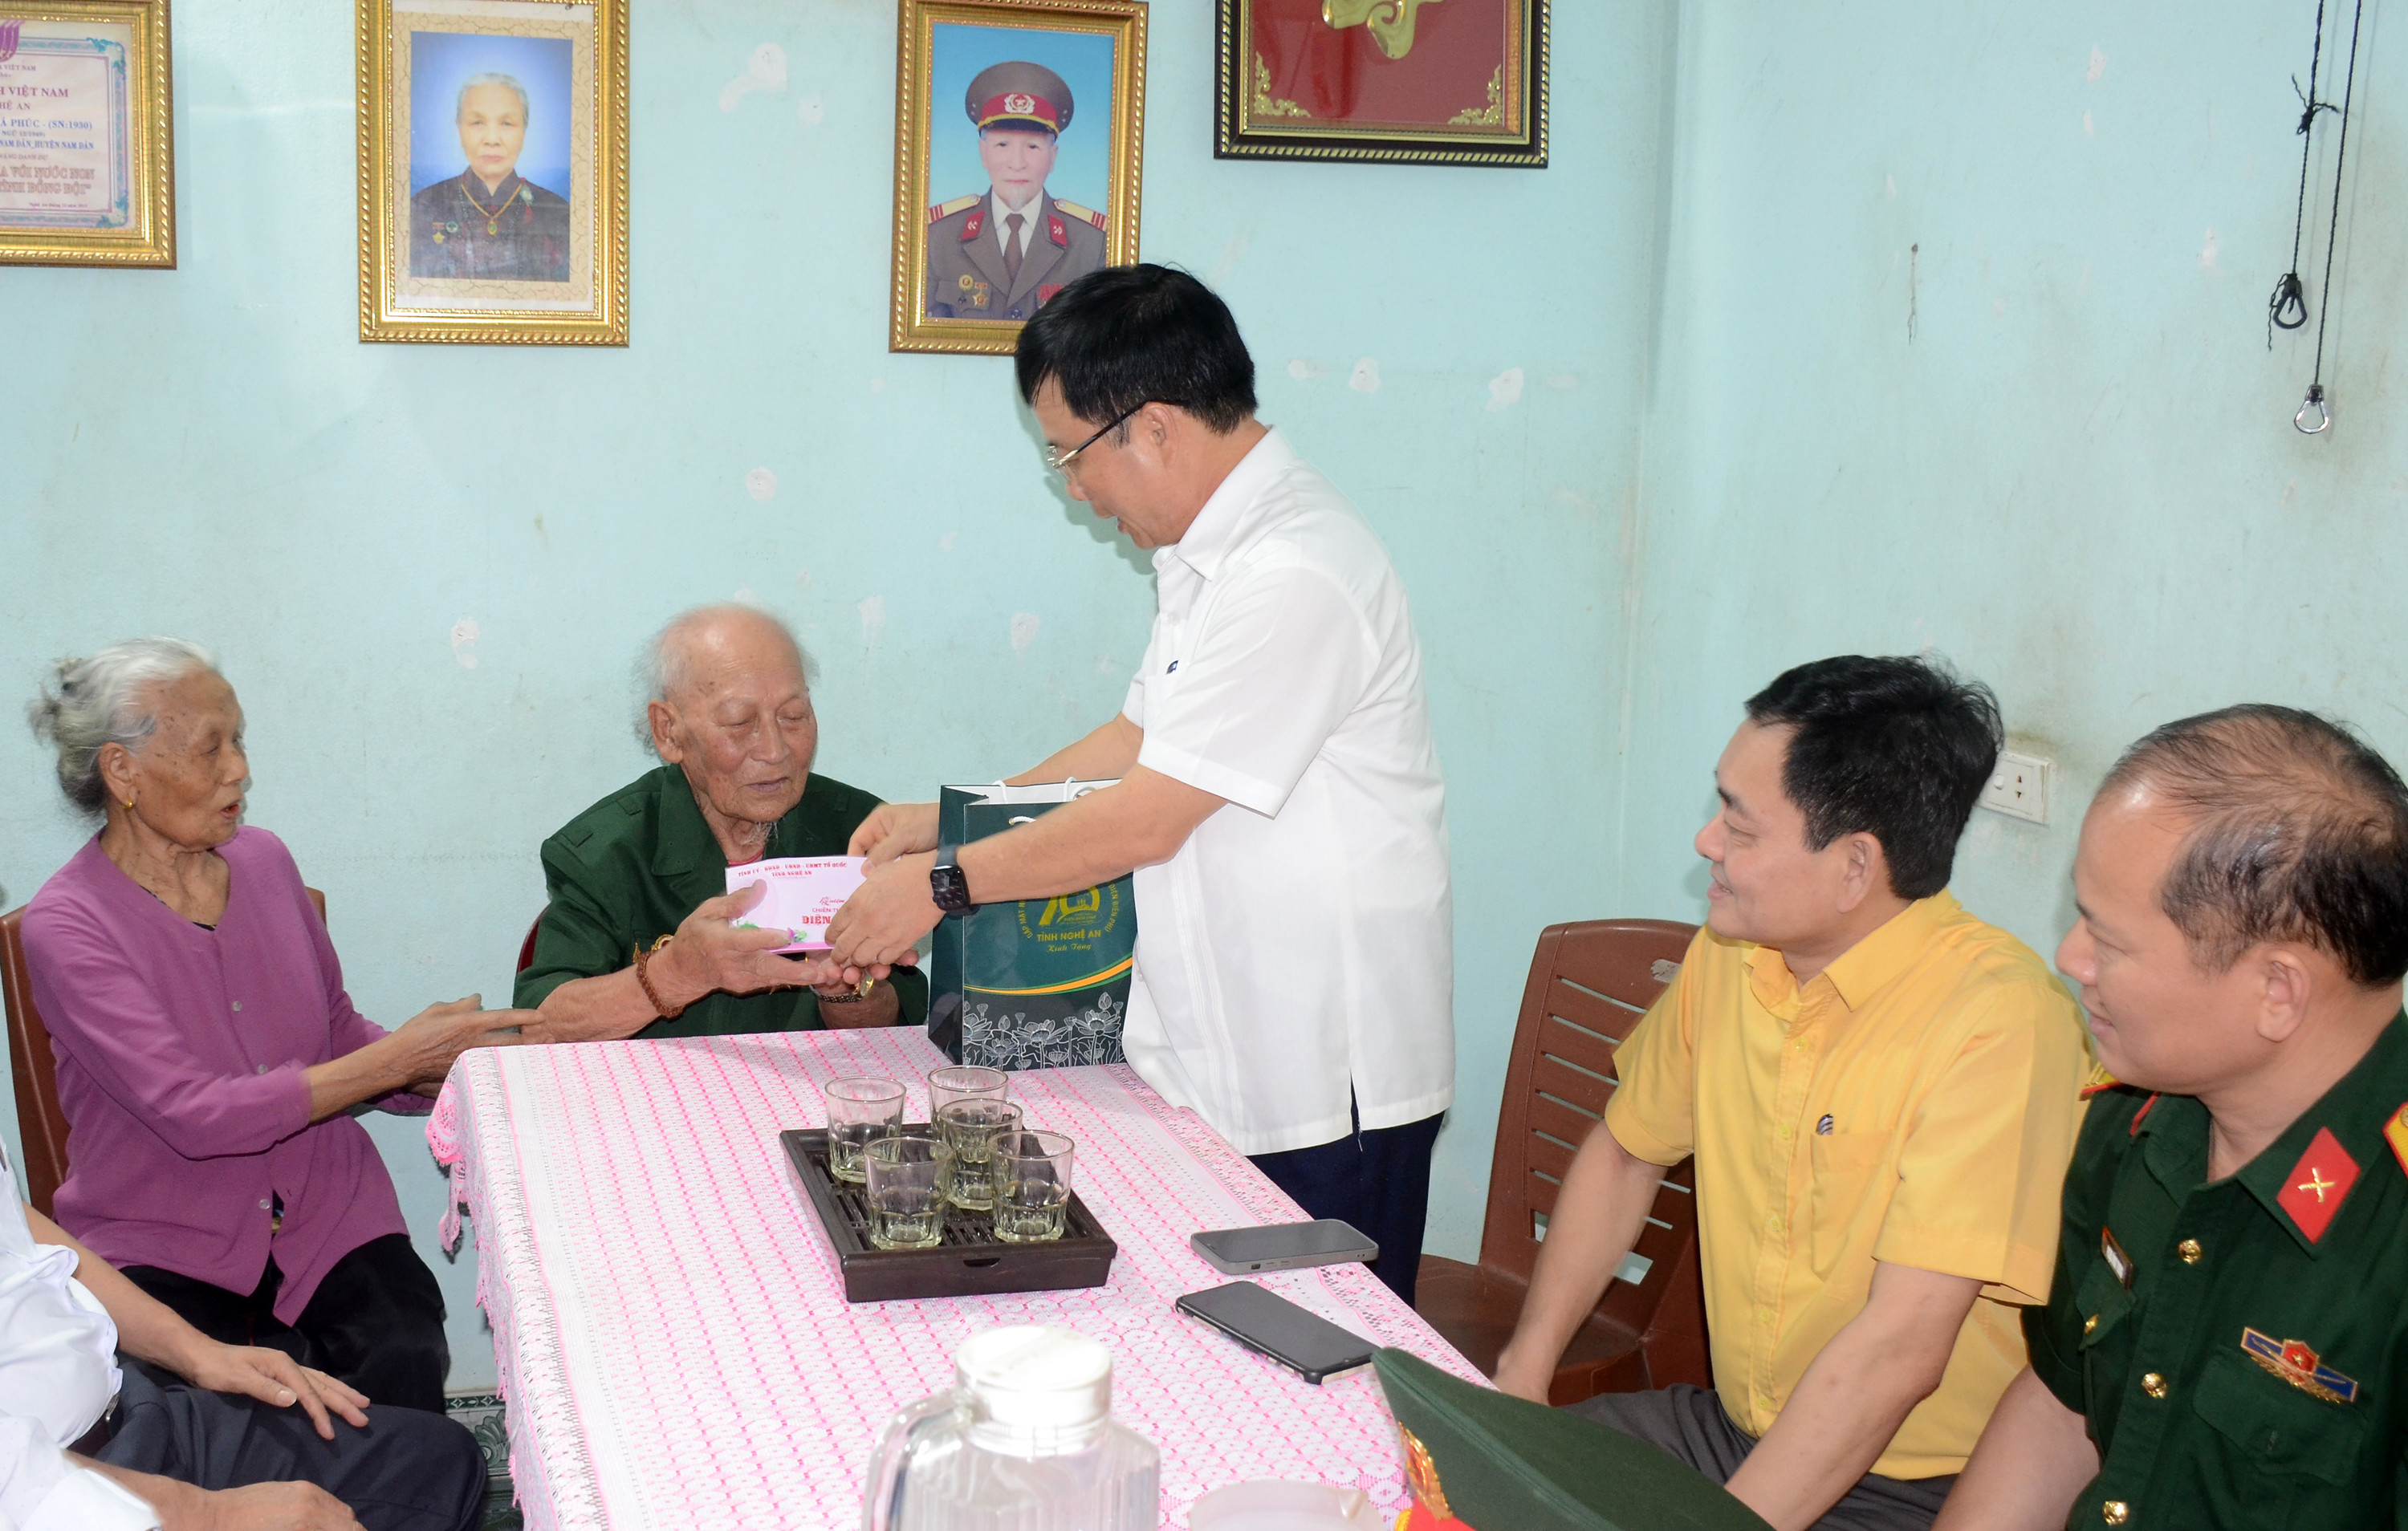 Đoàn công tác tỉnh Nghệ An đến thăm tặng quà cho cụ Trần Bá Phúc - chiến sĩ Điện Biên ở thị trấn Nam Đàn, huyện Nam Đàn (2).JPG